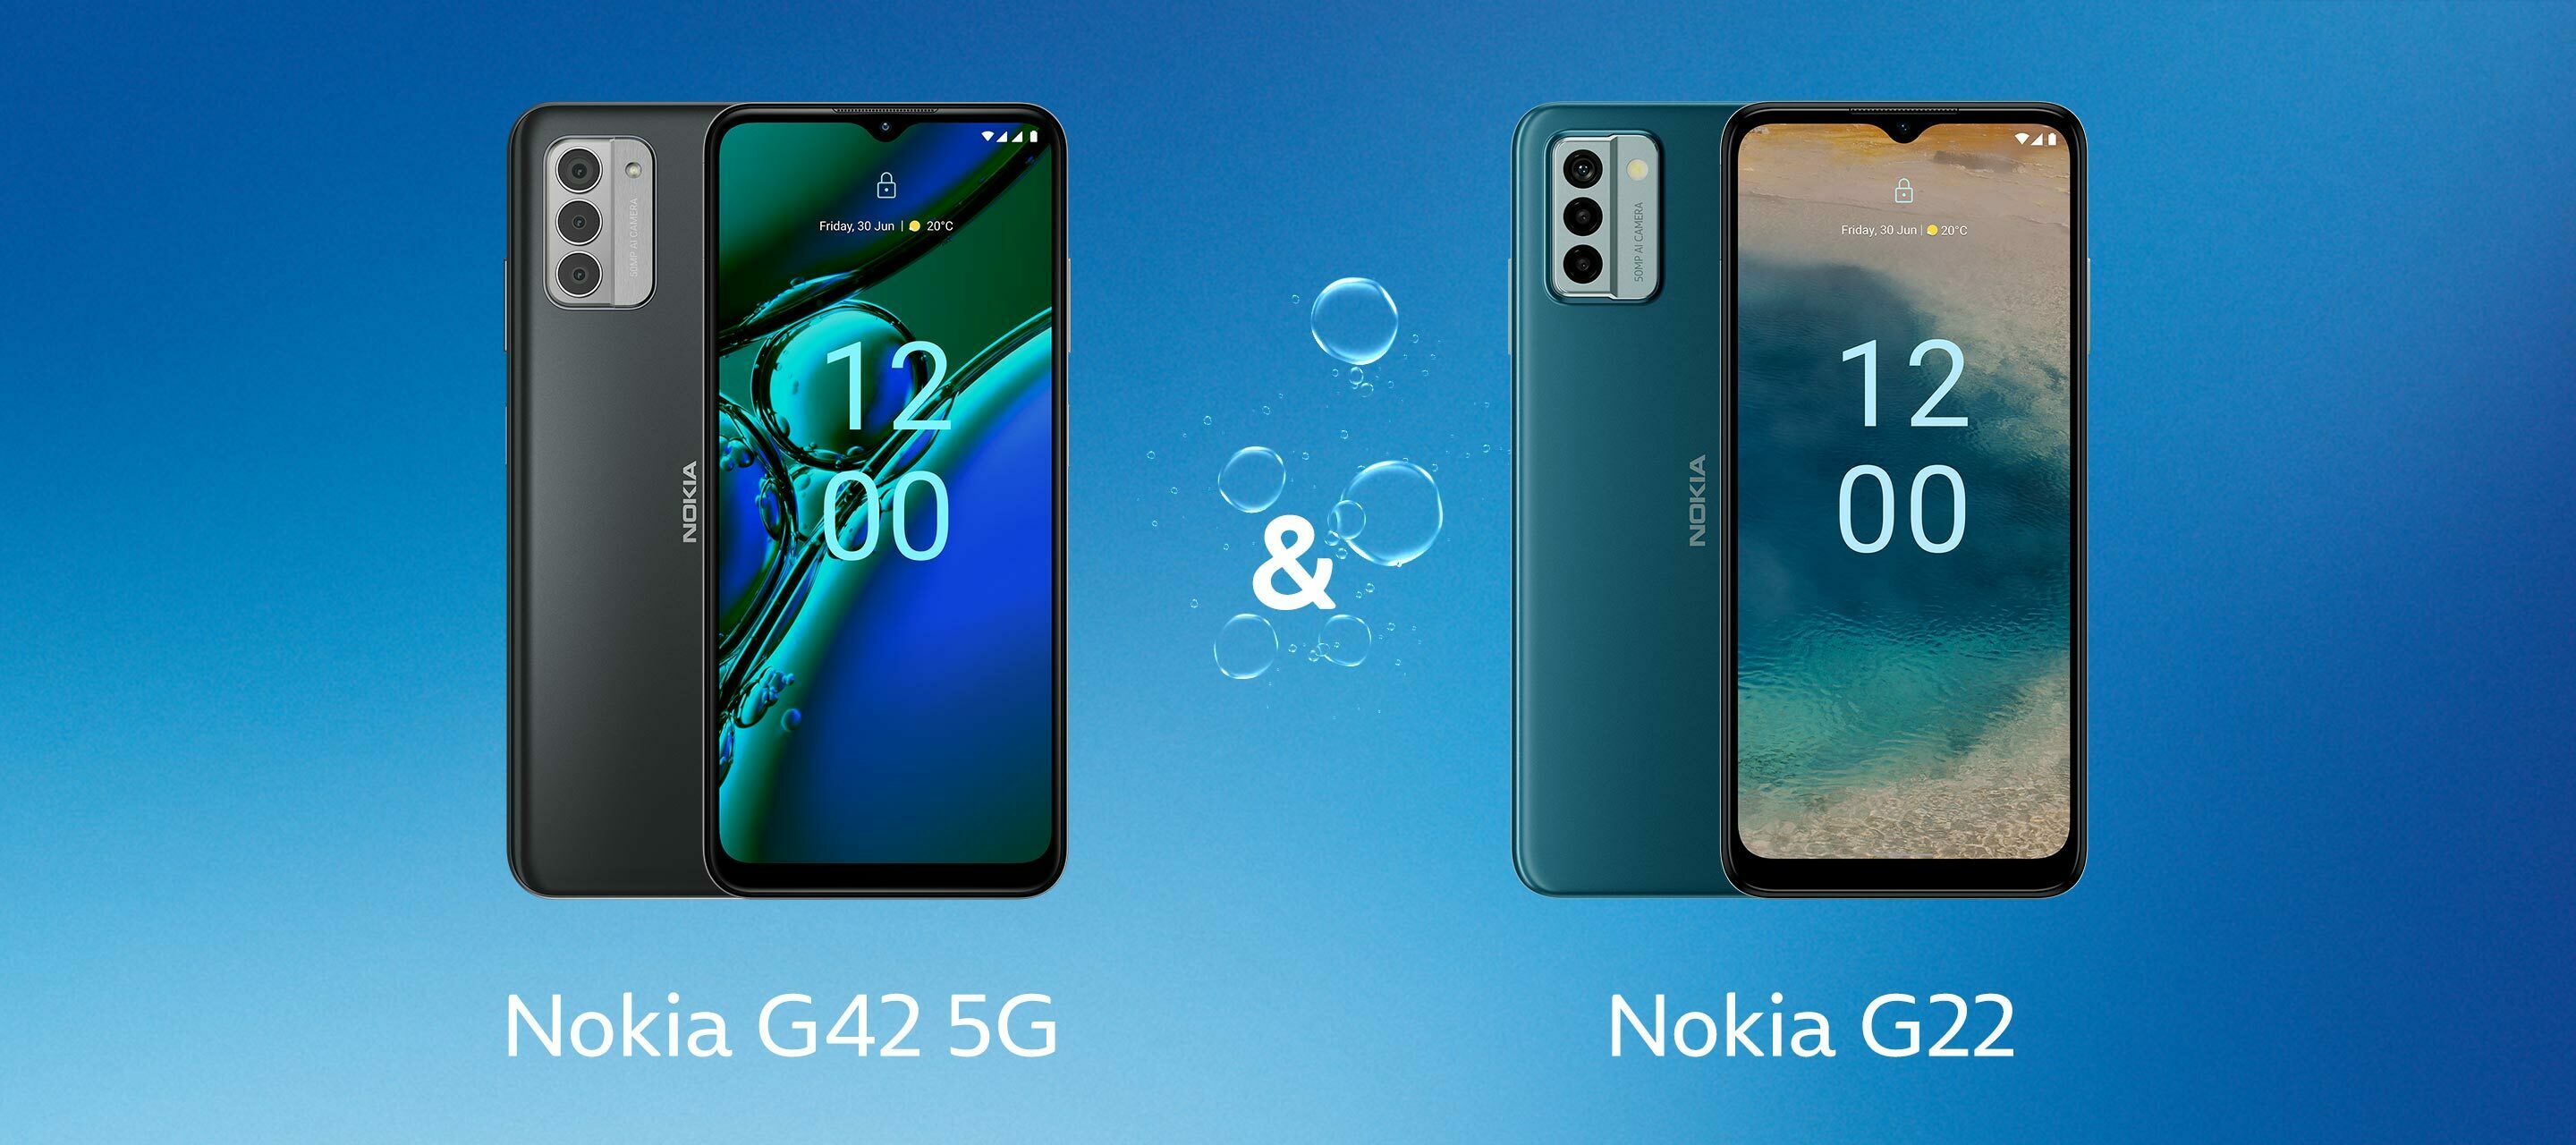 Umweltschonend und nachhaltig: Das Nokia G22 und Nokia G42 5G bei O₂